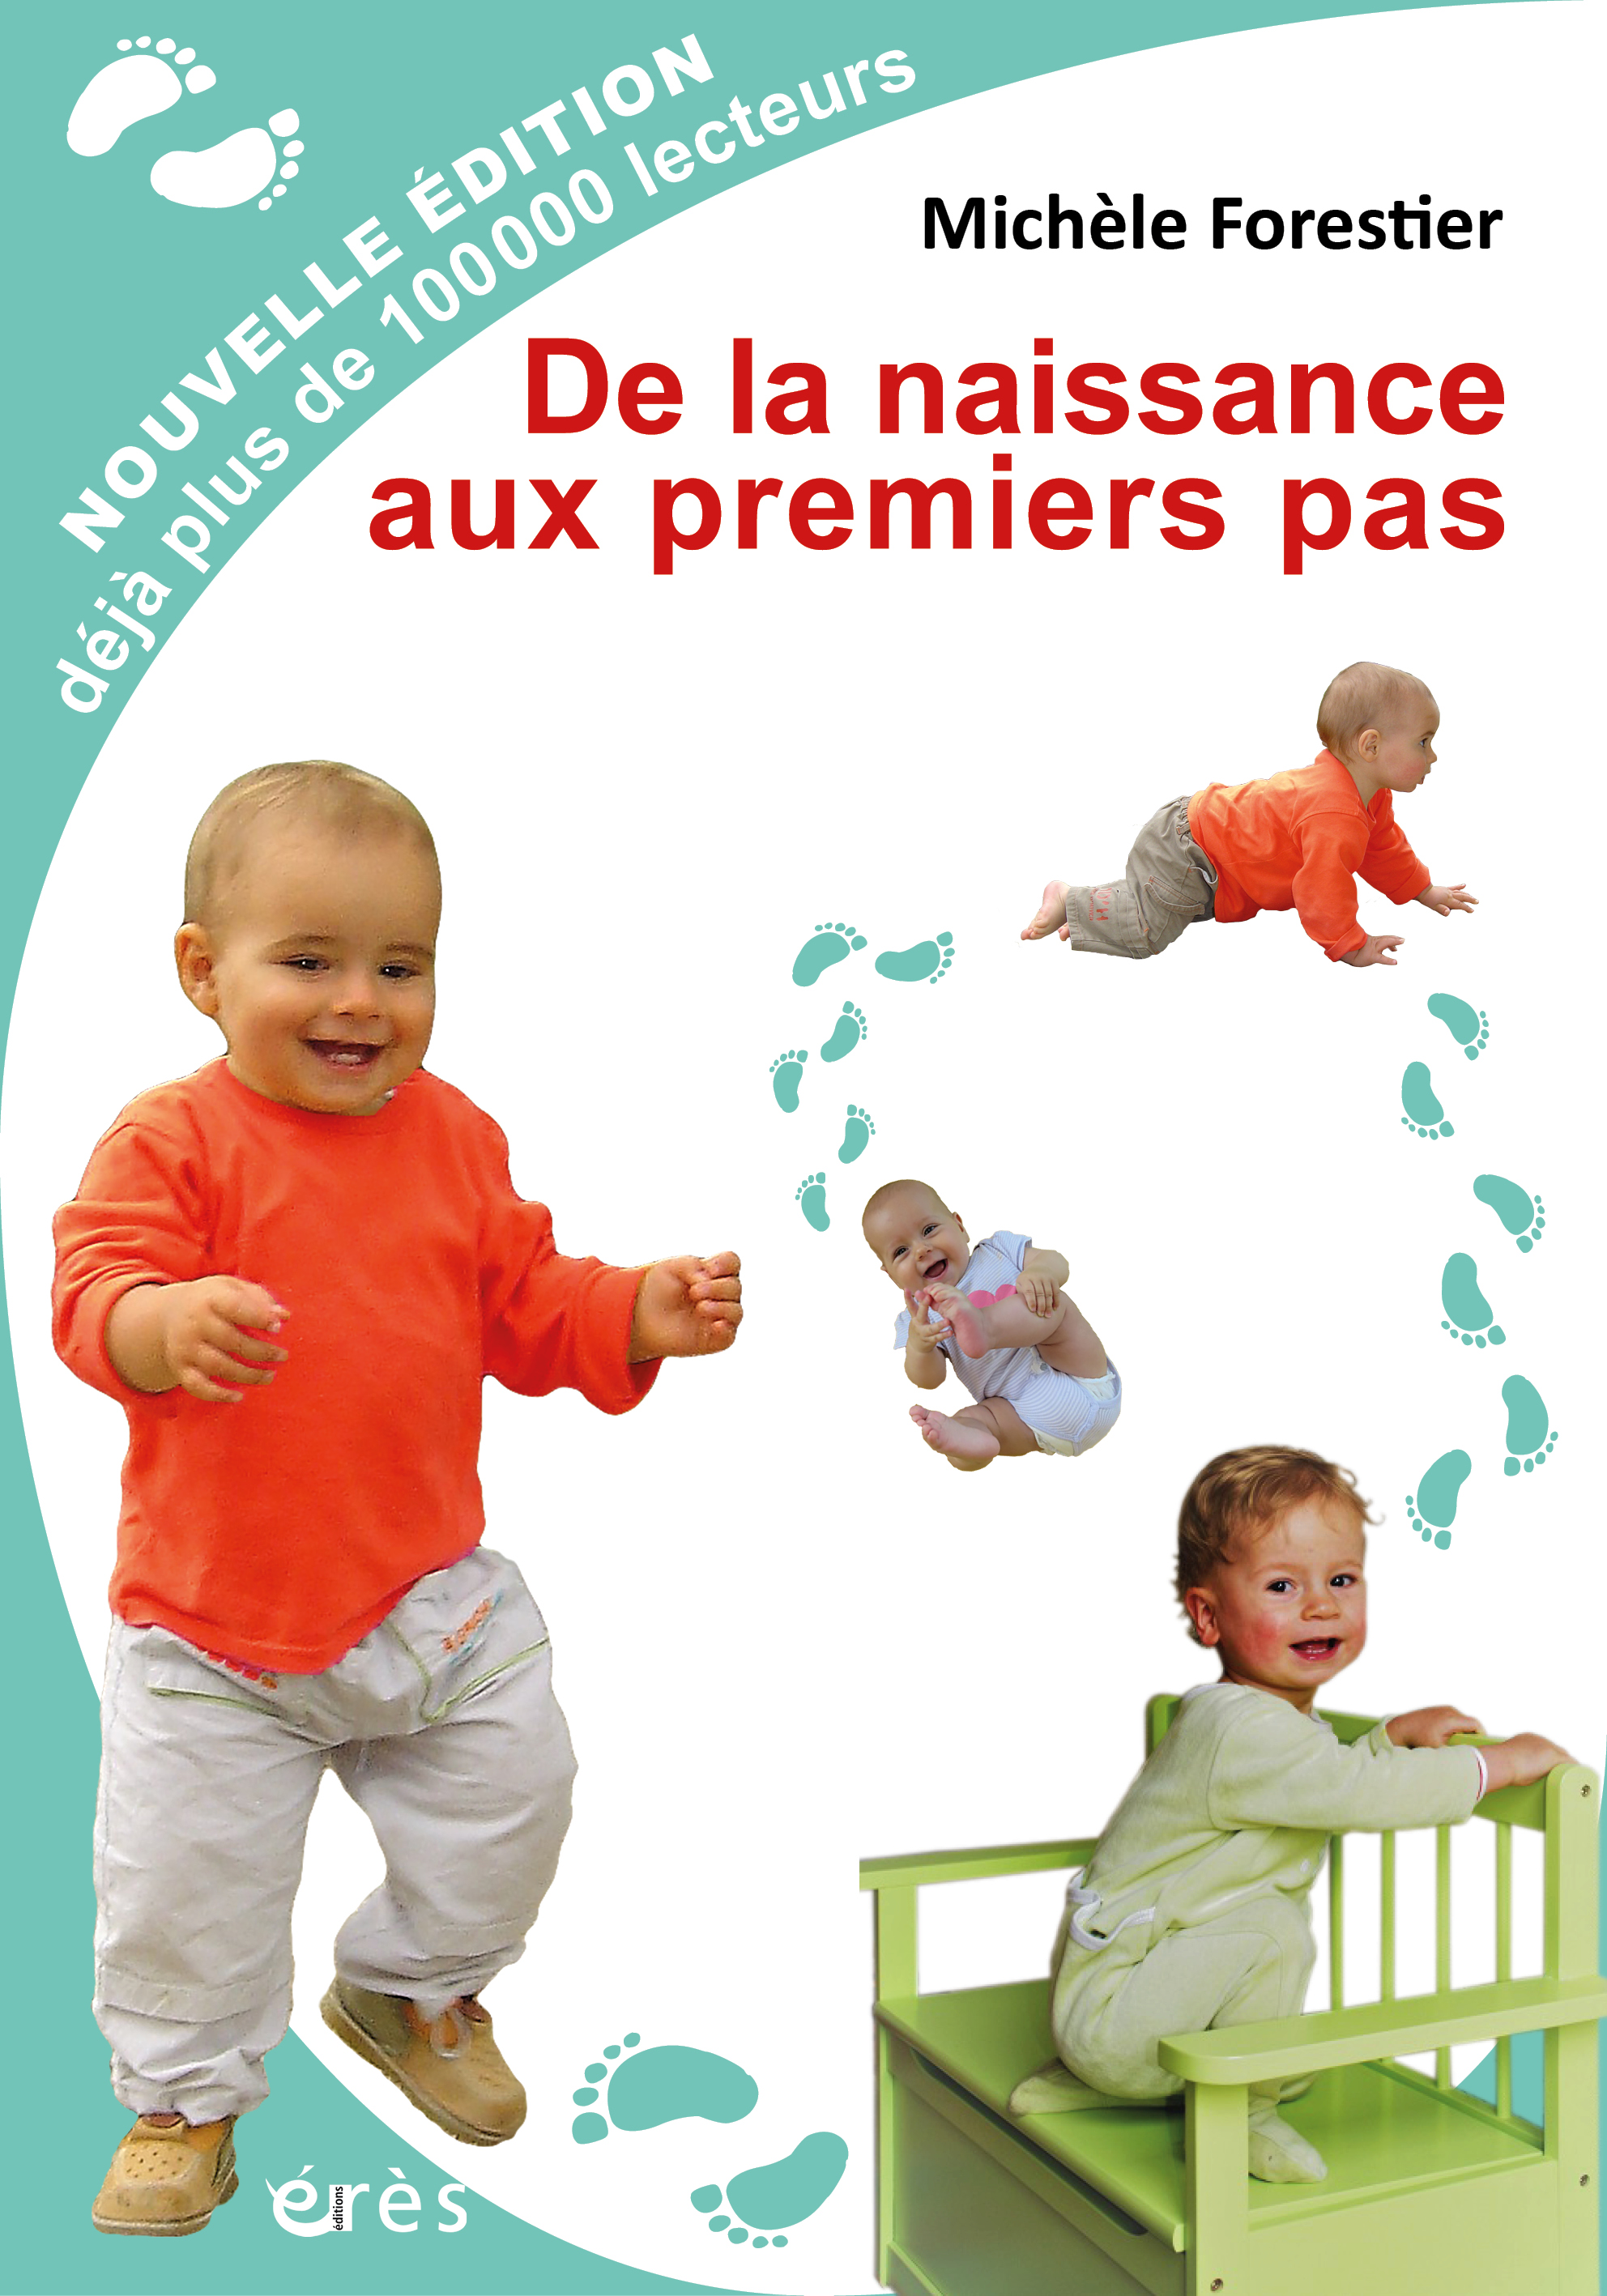 La marche : les premiers pas de bébé